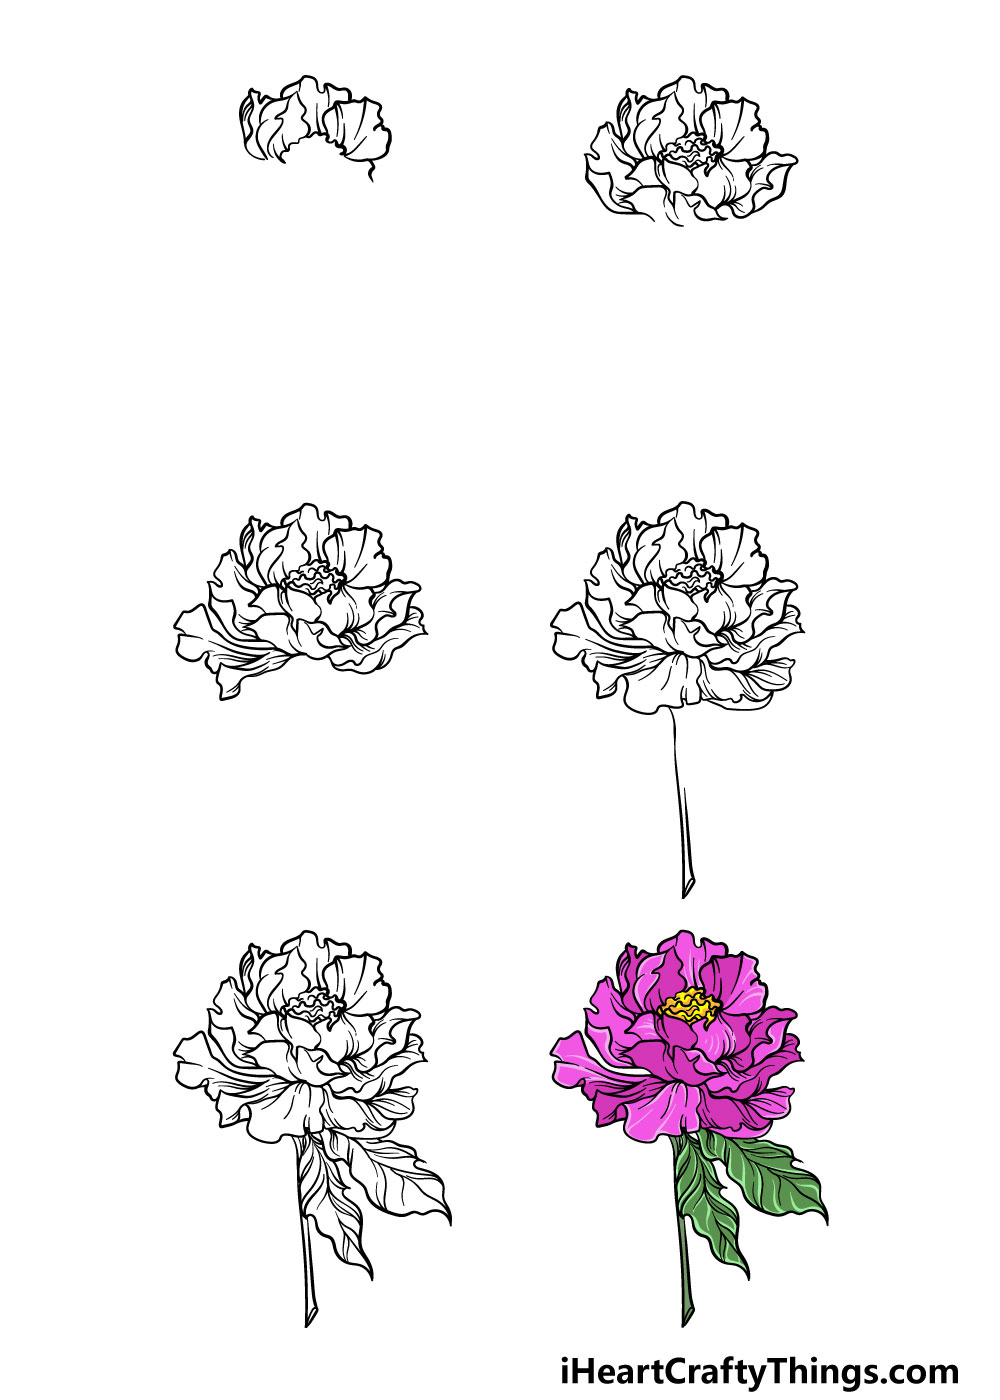 Cách vẽ hoa Hồng đơn giản 3D bằng bút chì bút màu